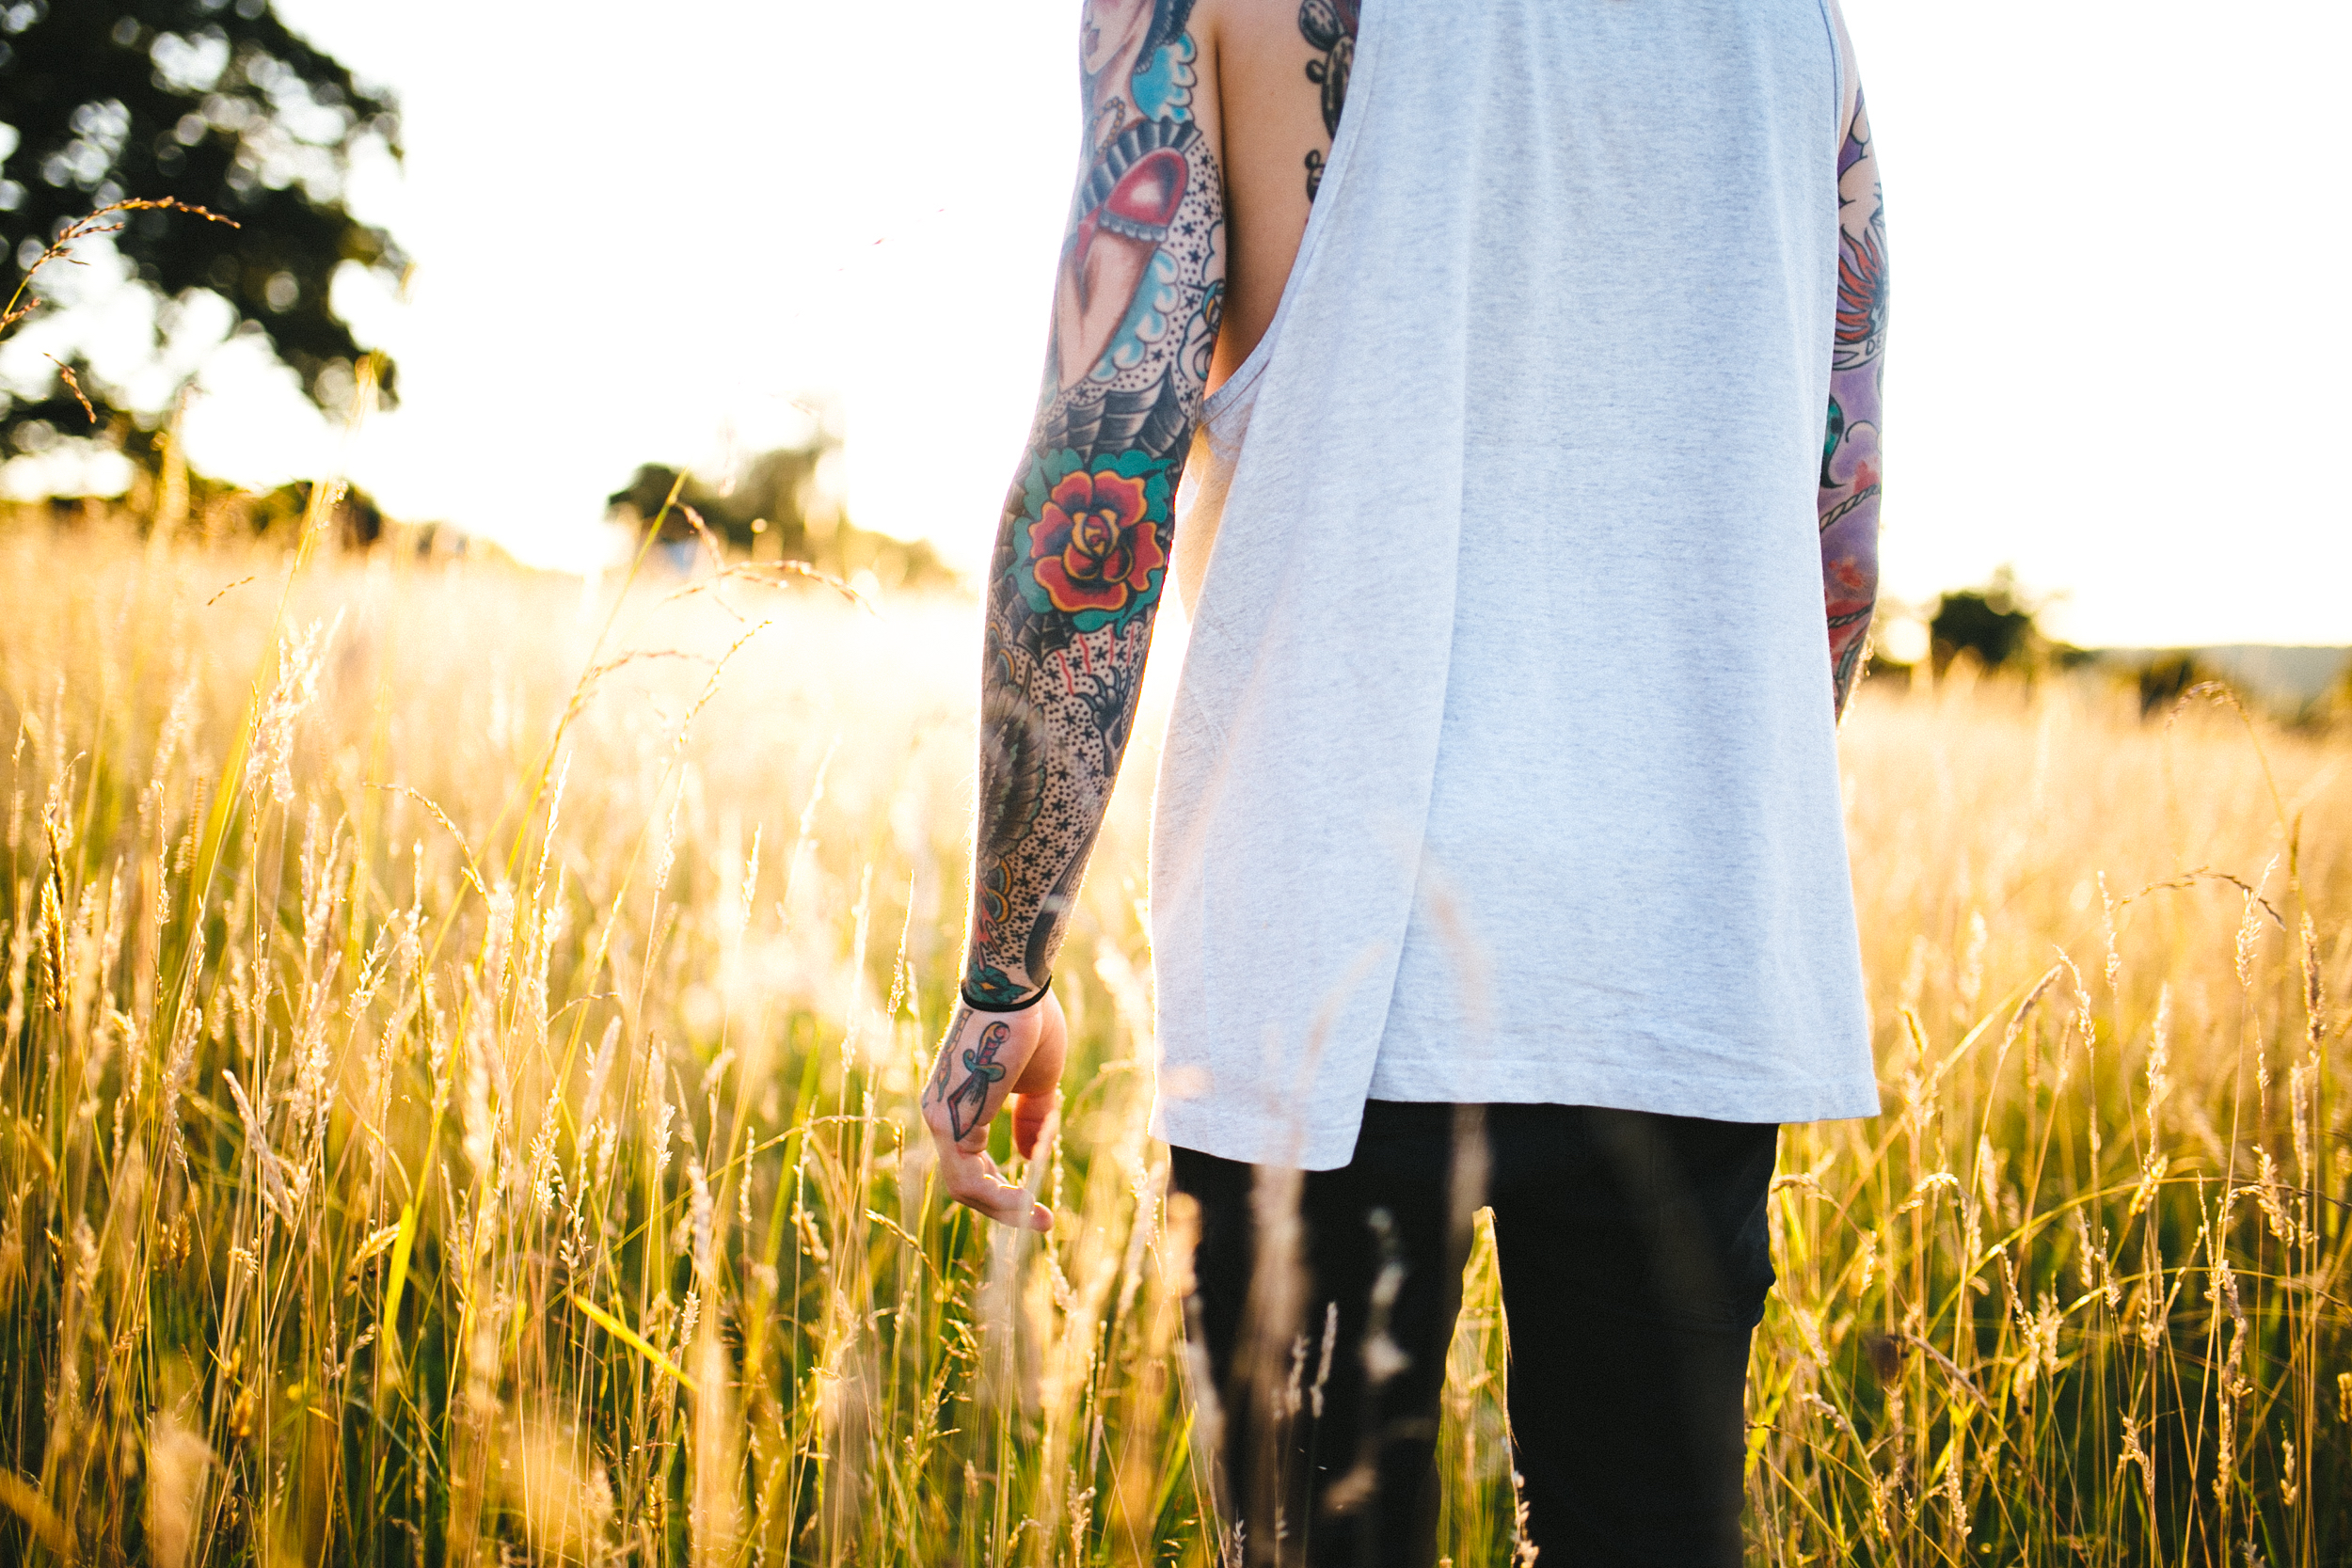 Tattooed man walking in a field